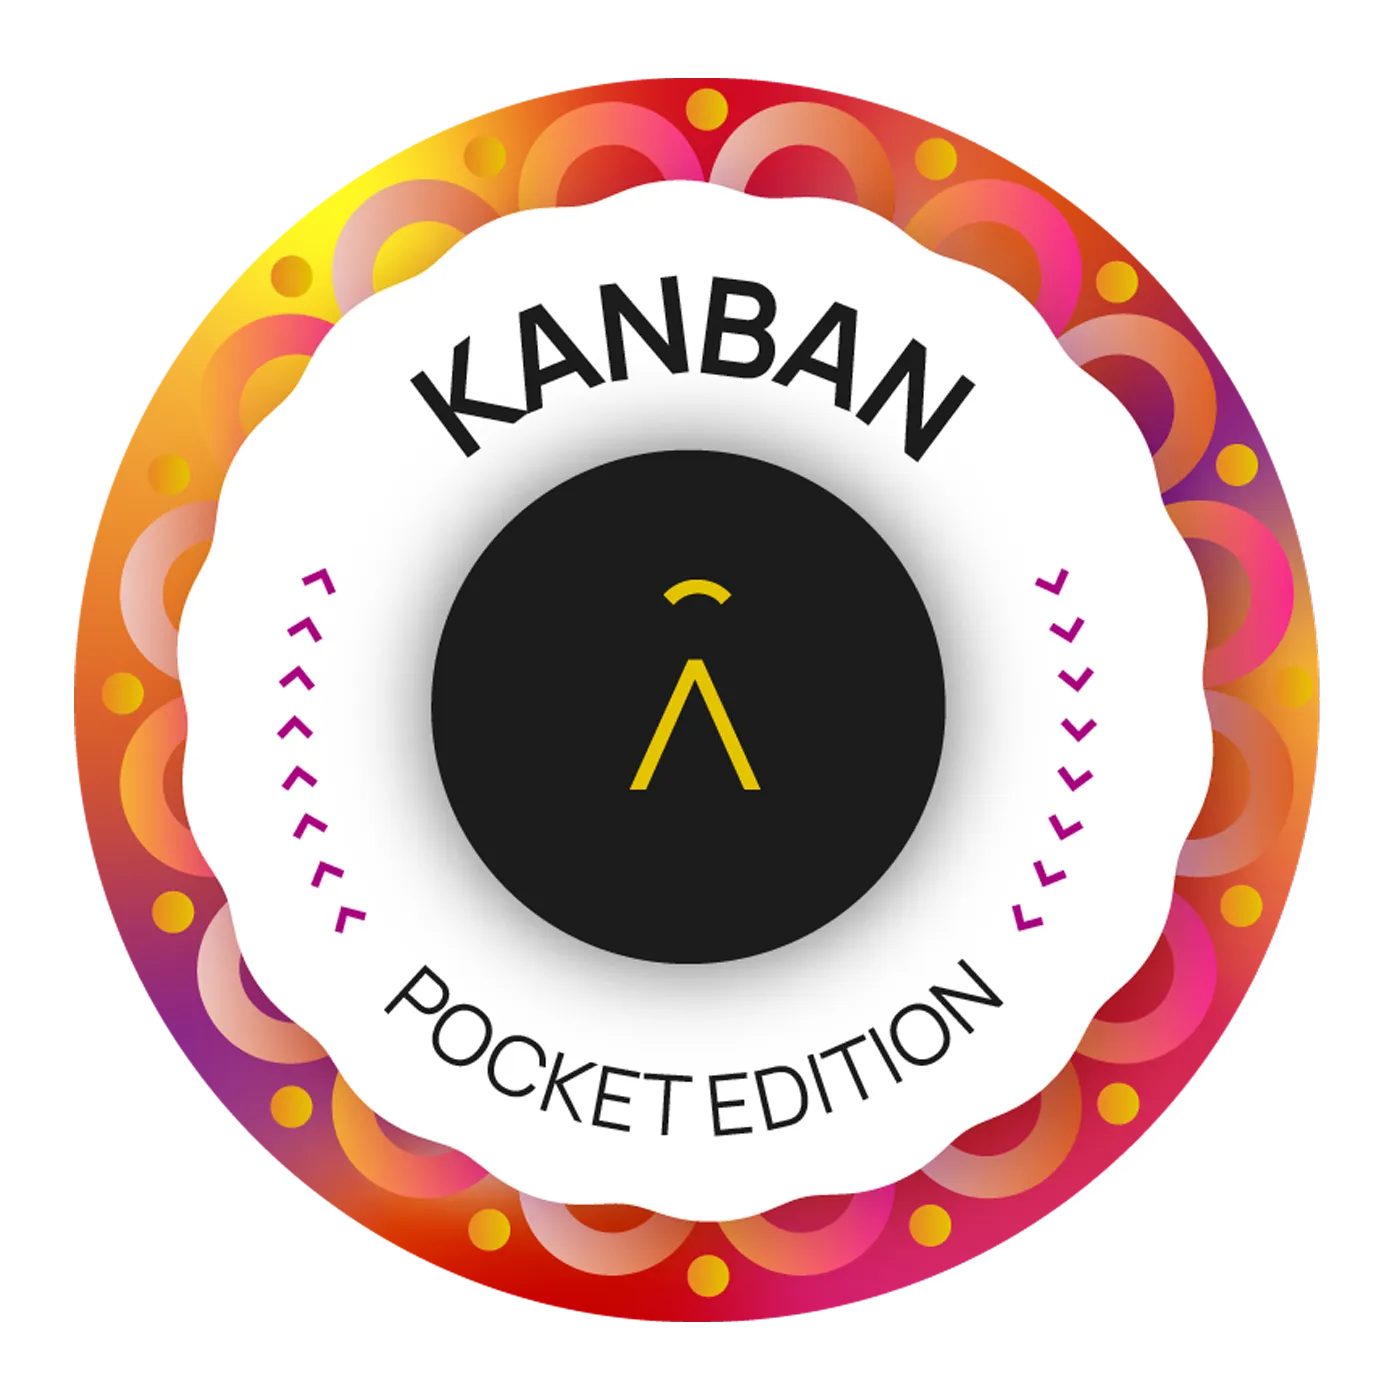 Kanban Poket Edition